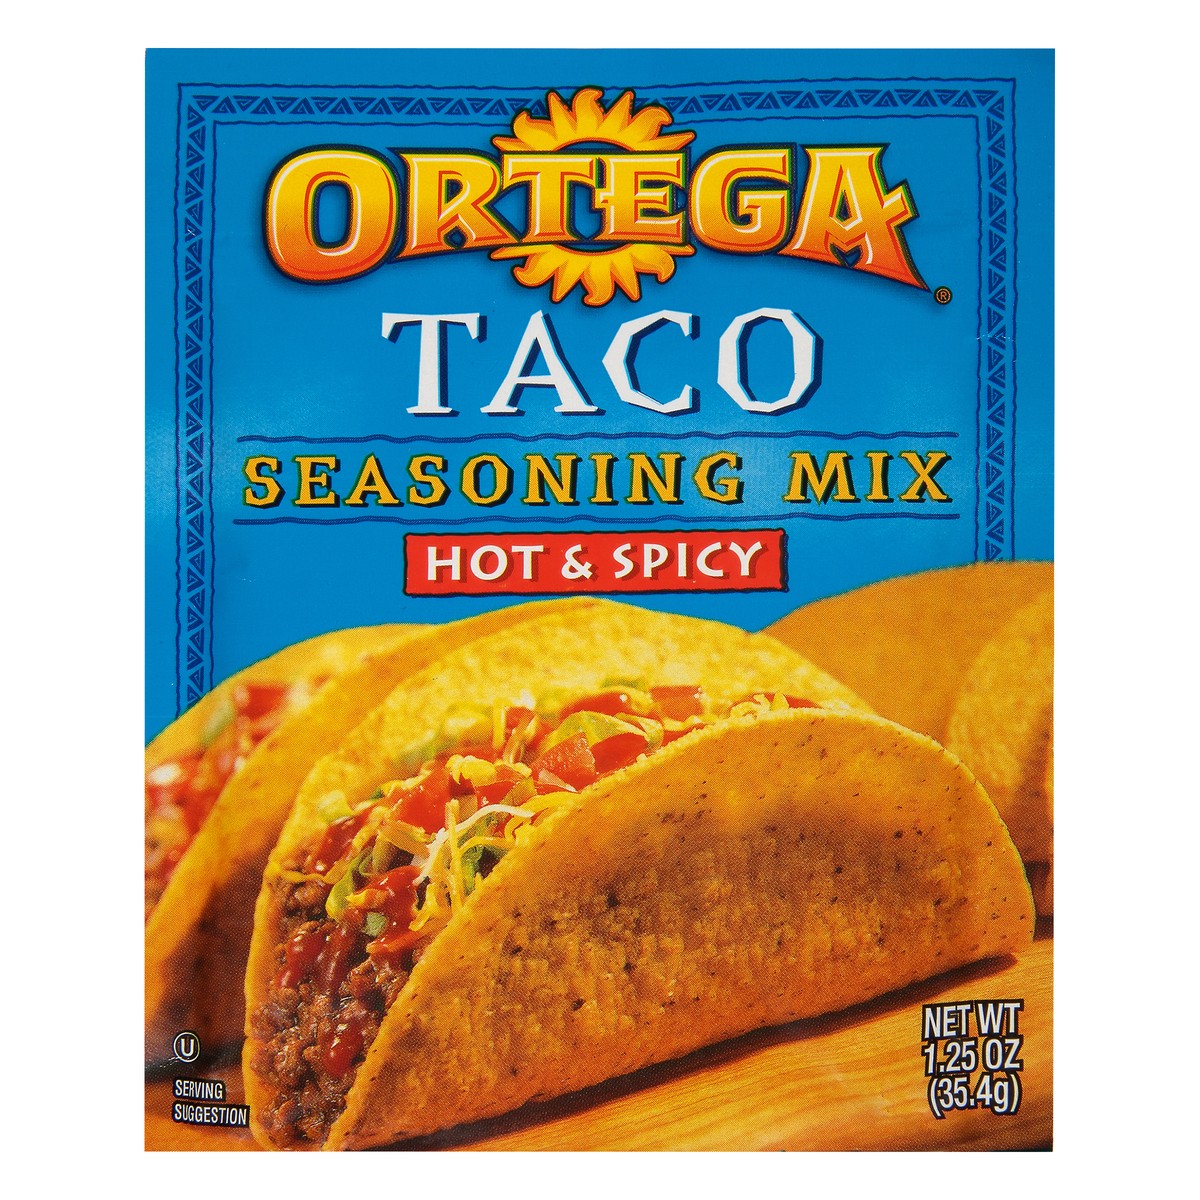 slide 5 of 12, Ortega Taco Hot & Spicy Seasoning Mix 1.25 oz. Packet, 1.25 oz